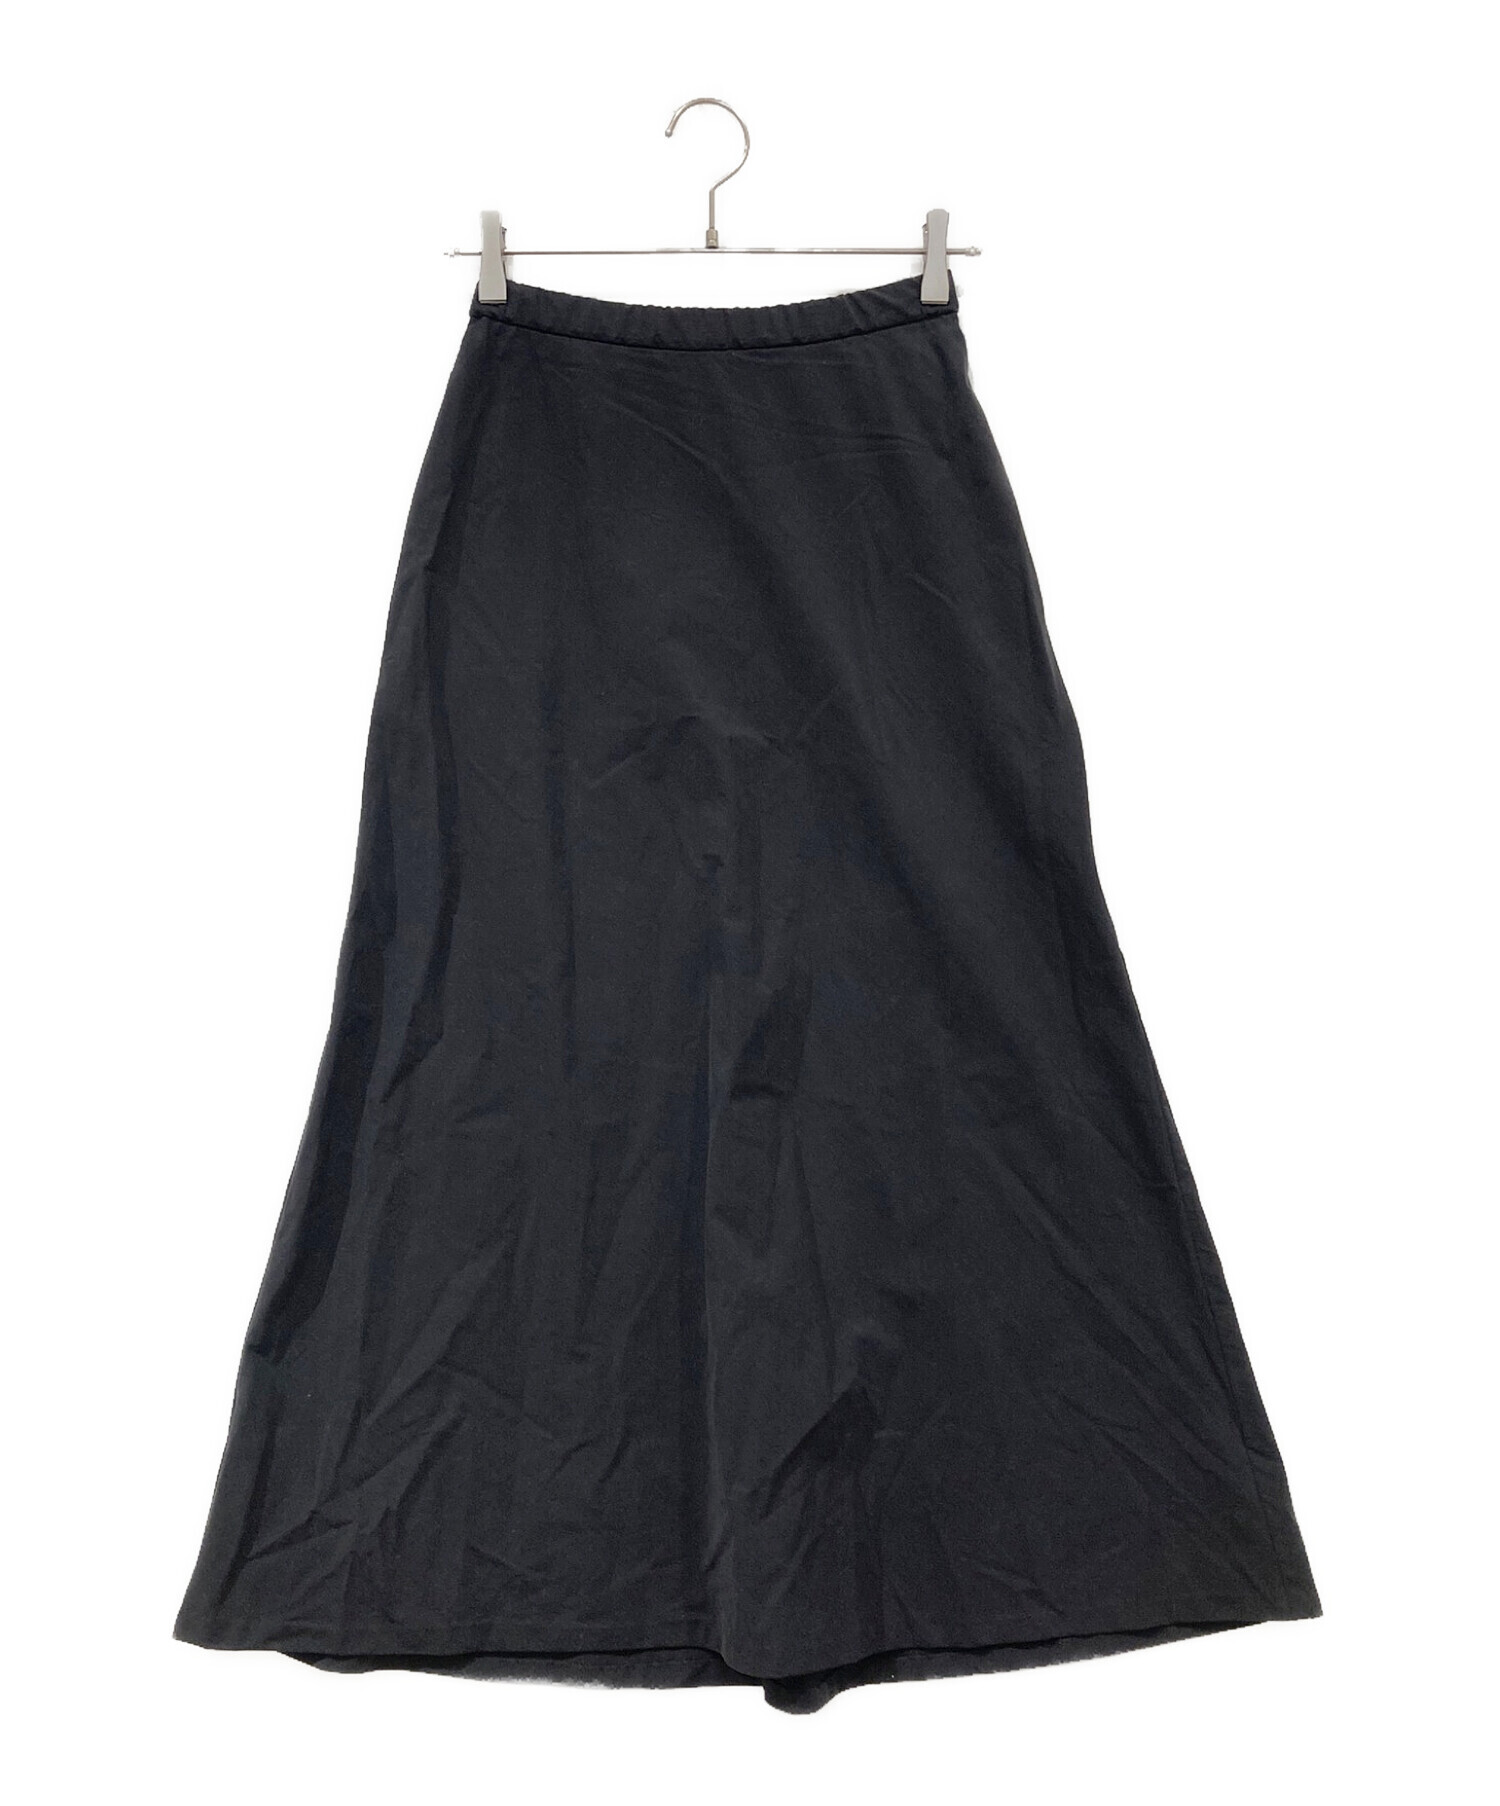 FRAMeWORK 【高山 都×FRAMeWORK】 スカート ブラック36スカート ...